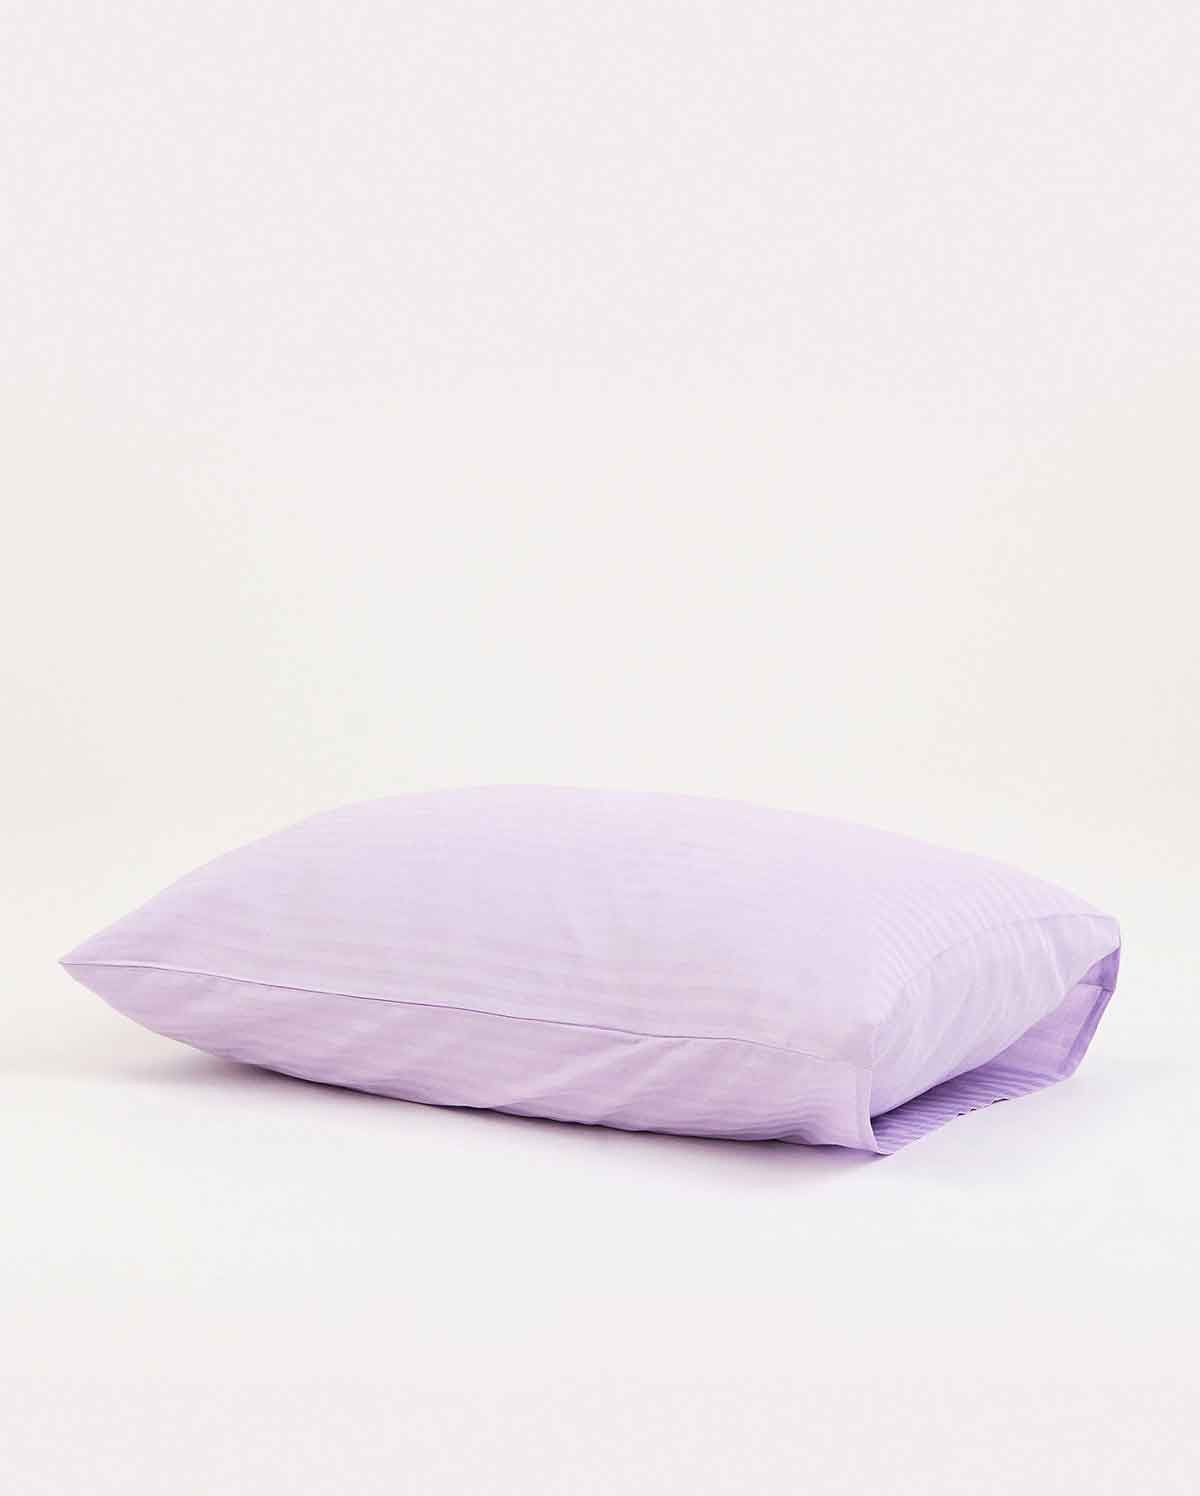 Sateen Stripe - Core Bedding Set - Lilac & White